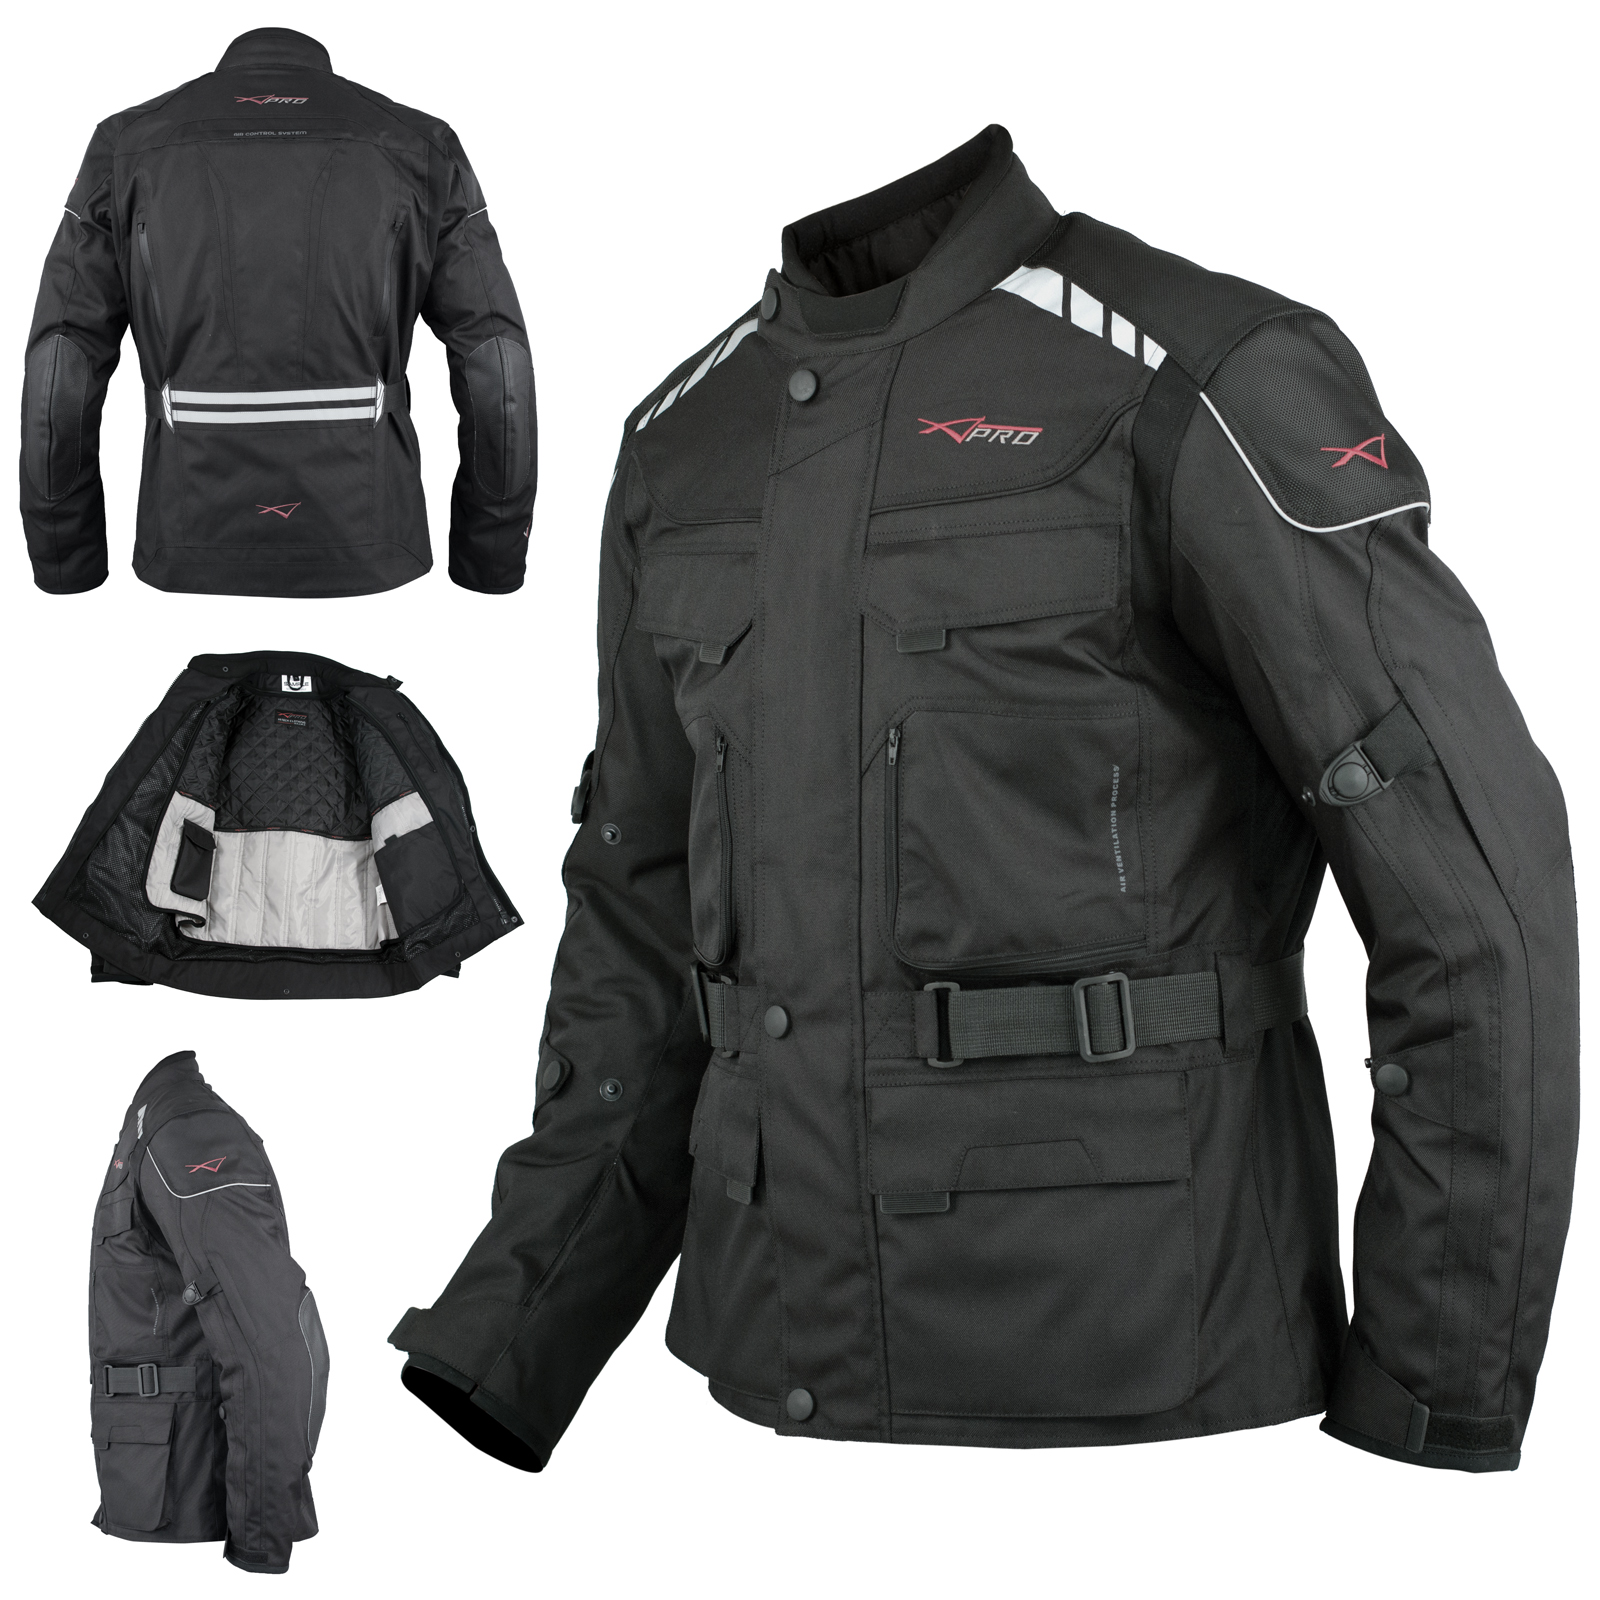 Abbigliamento Moto uomo giacca Moto anticaduta giacca da corsa da corsa con  protezioni fuoristrada automatiche Chaqueta Moto